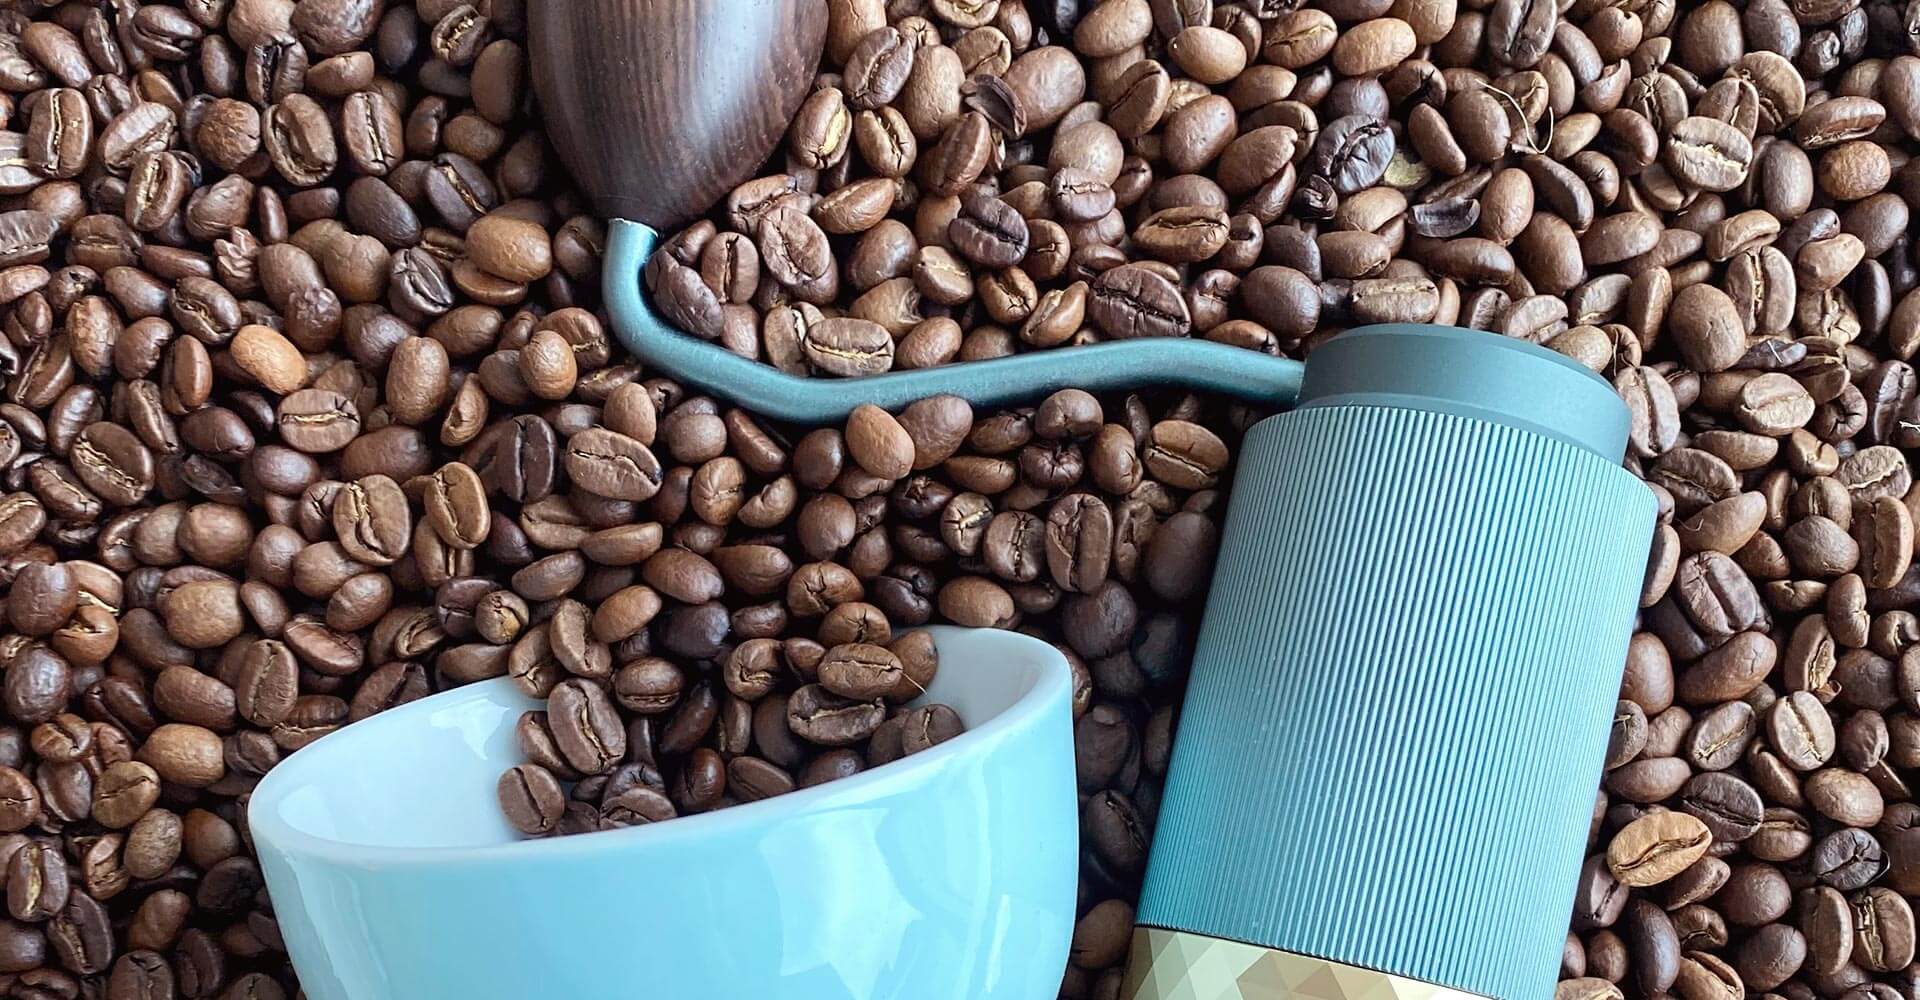 Blaue Handmühle und blaue Tasse liegen auf einem Bett aus Kaffeebohnen